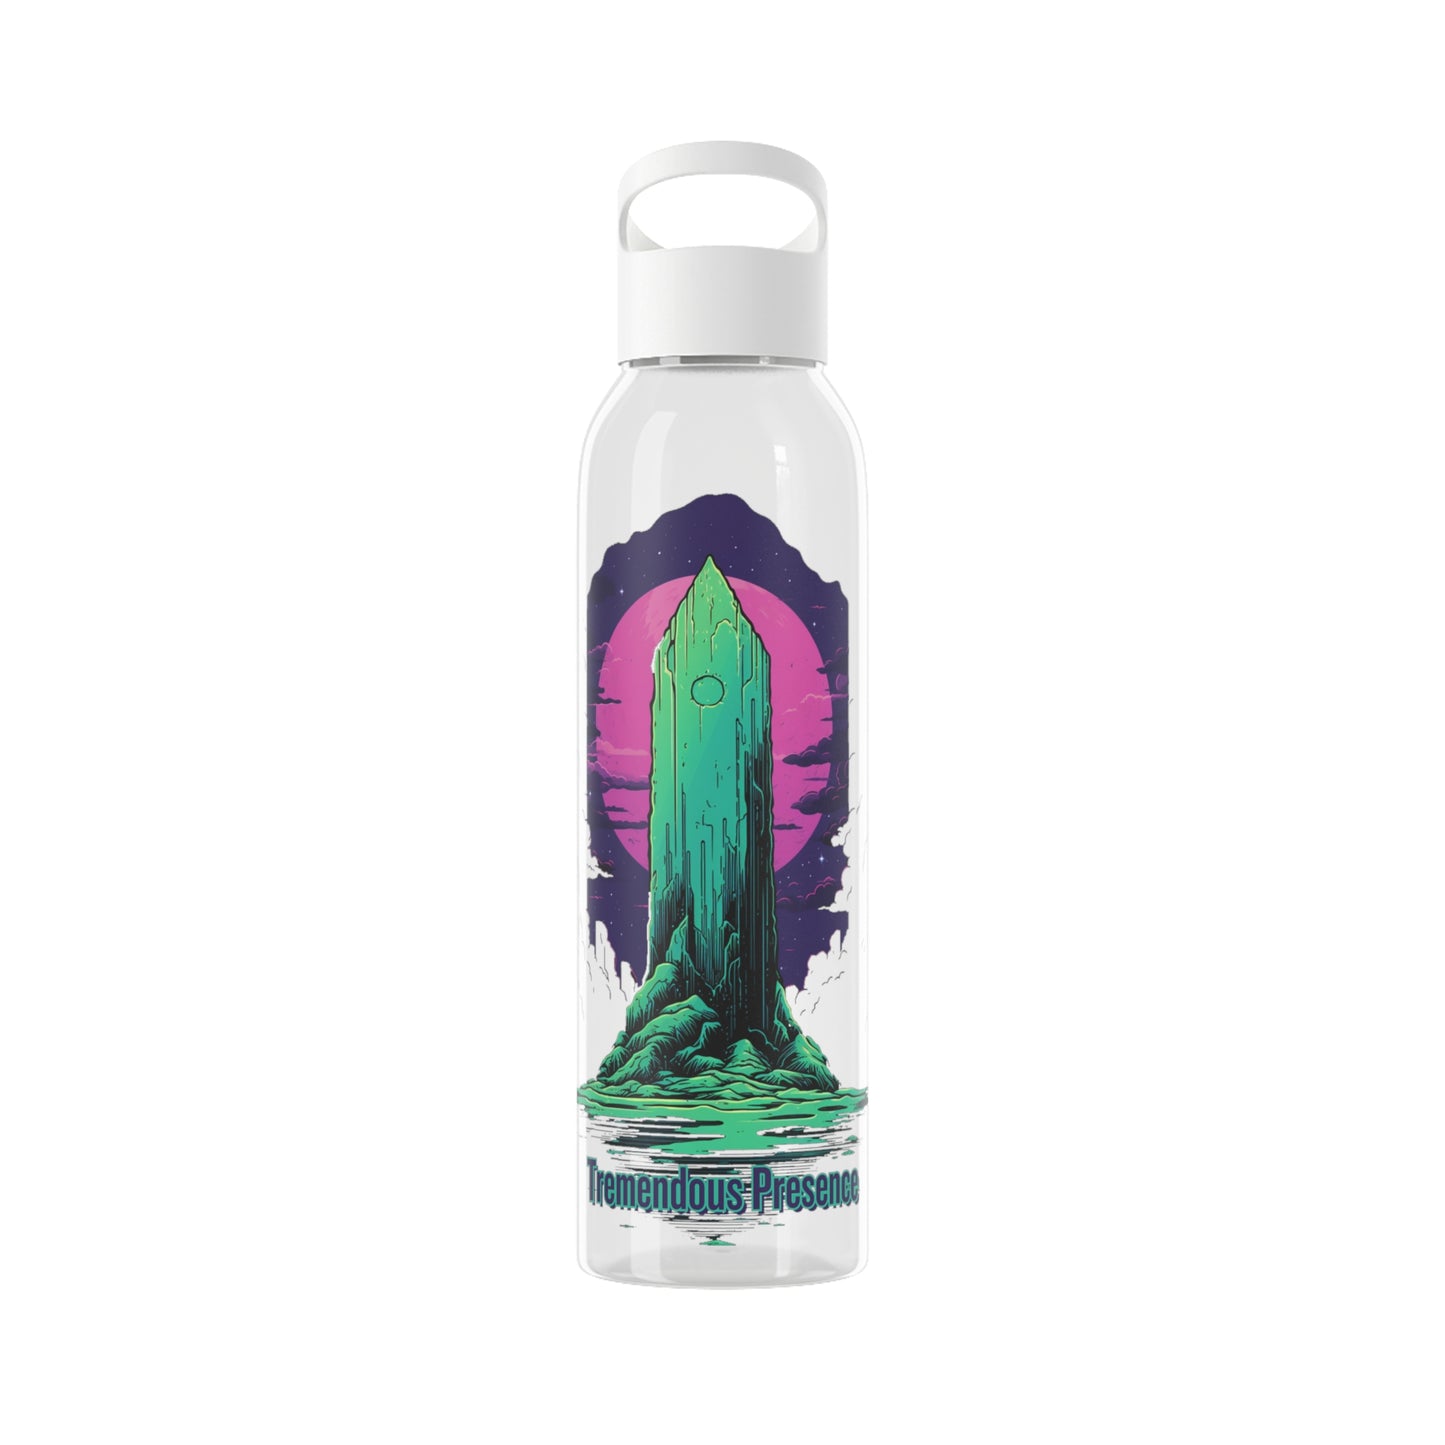 Tremendous Presence | Sky Water Bottle